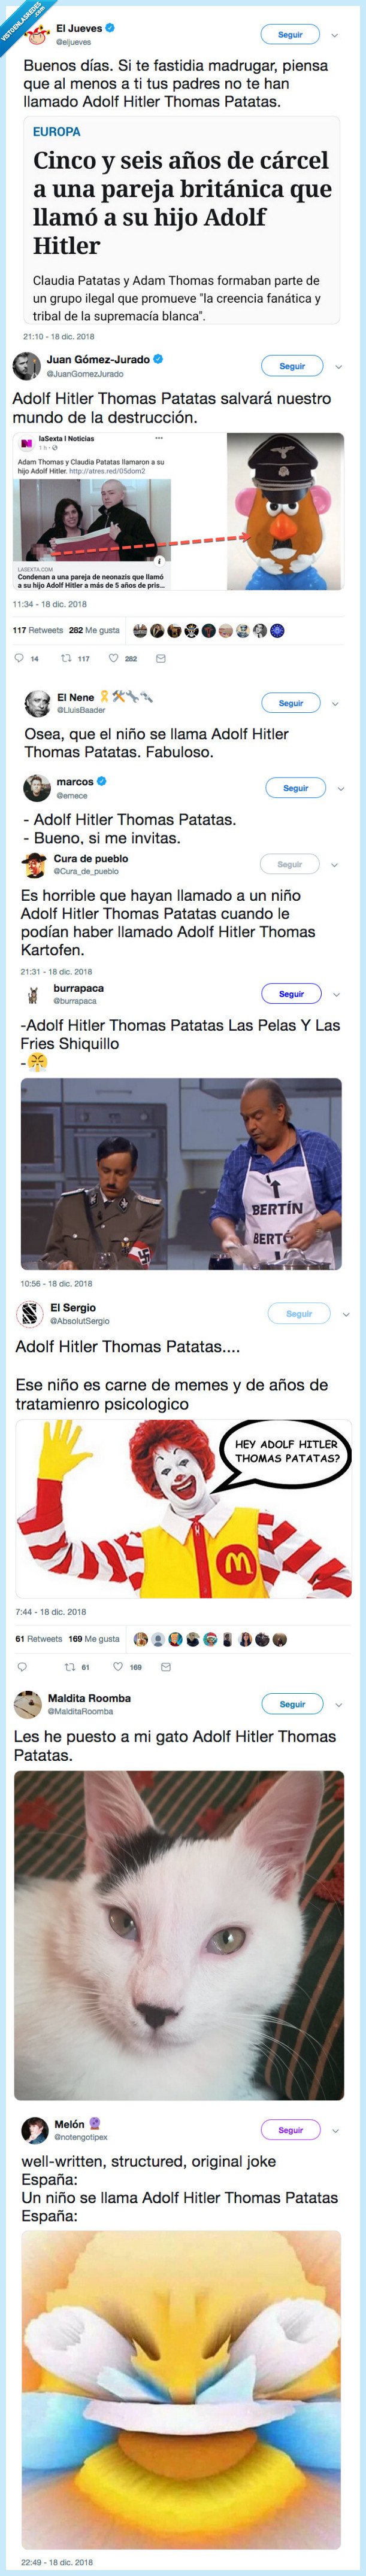 505010 - Llaman a su hijo Adolf Hitler Thomas Patatas y Twitter se ha convertido en un festival de memes